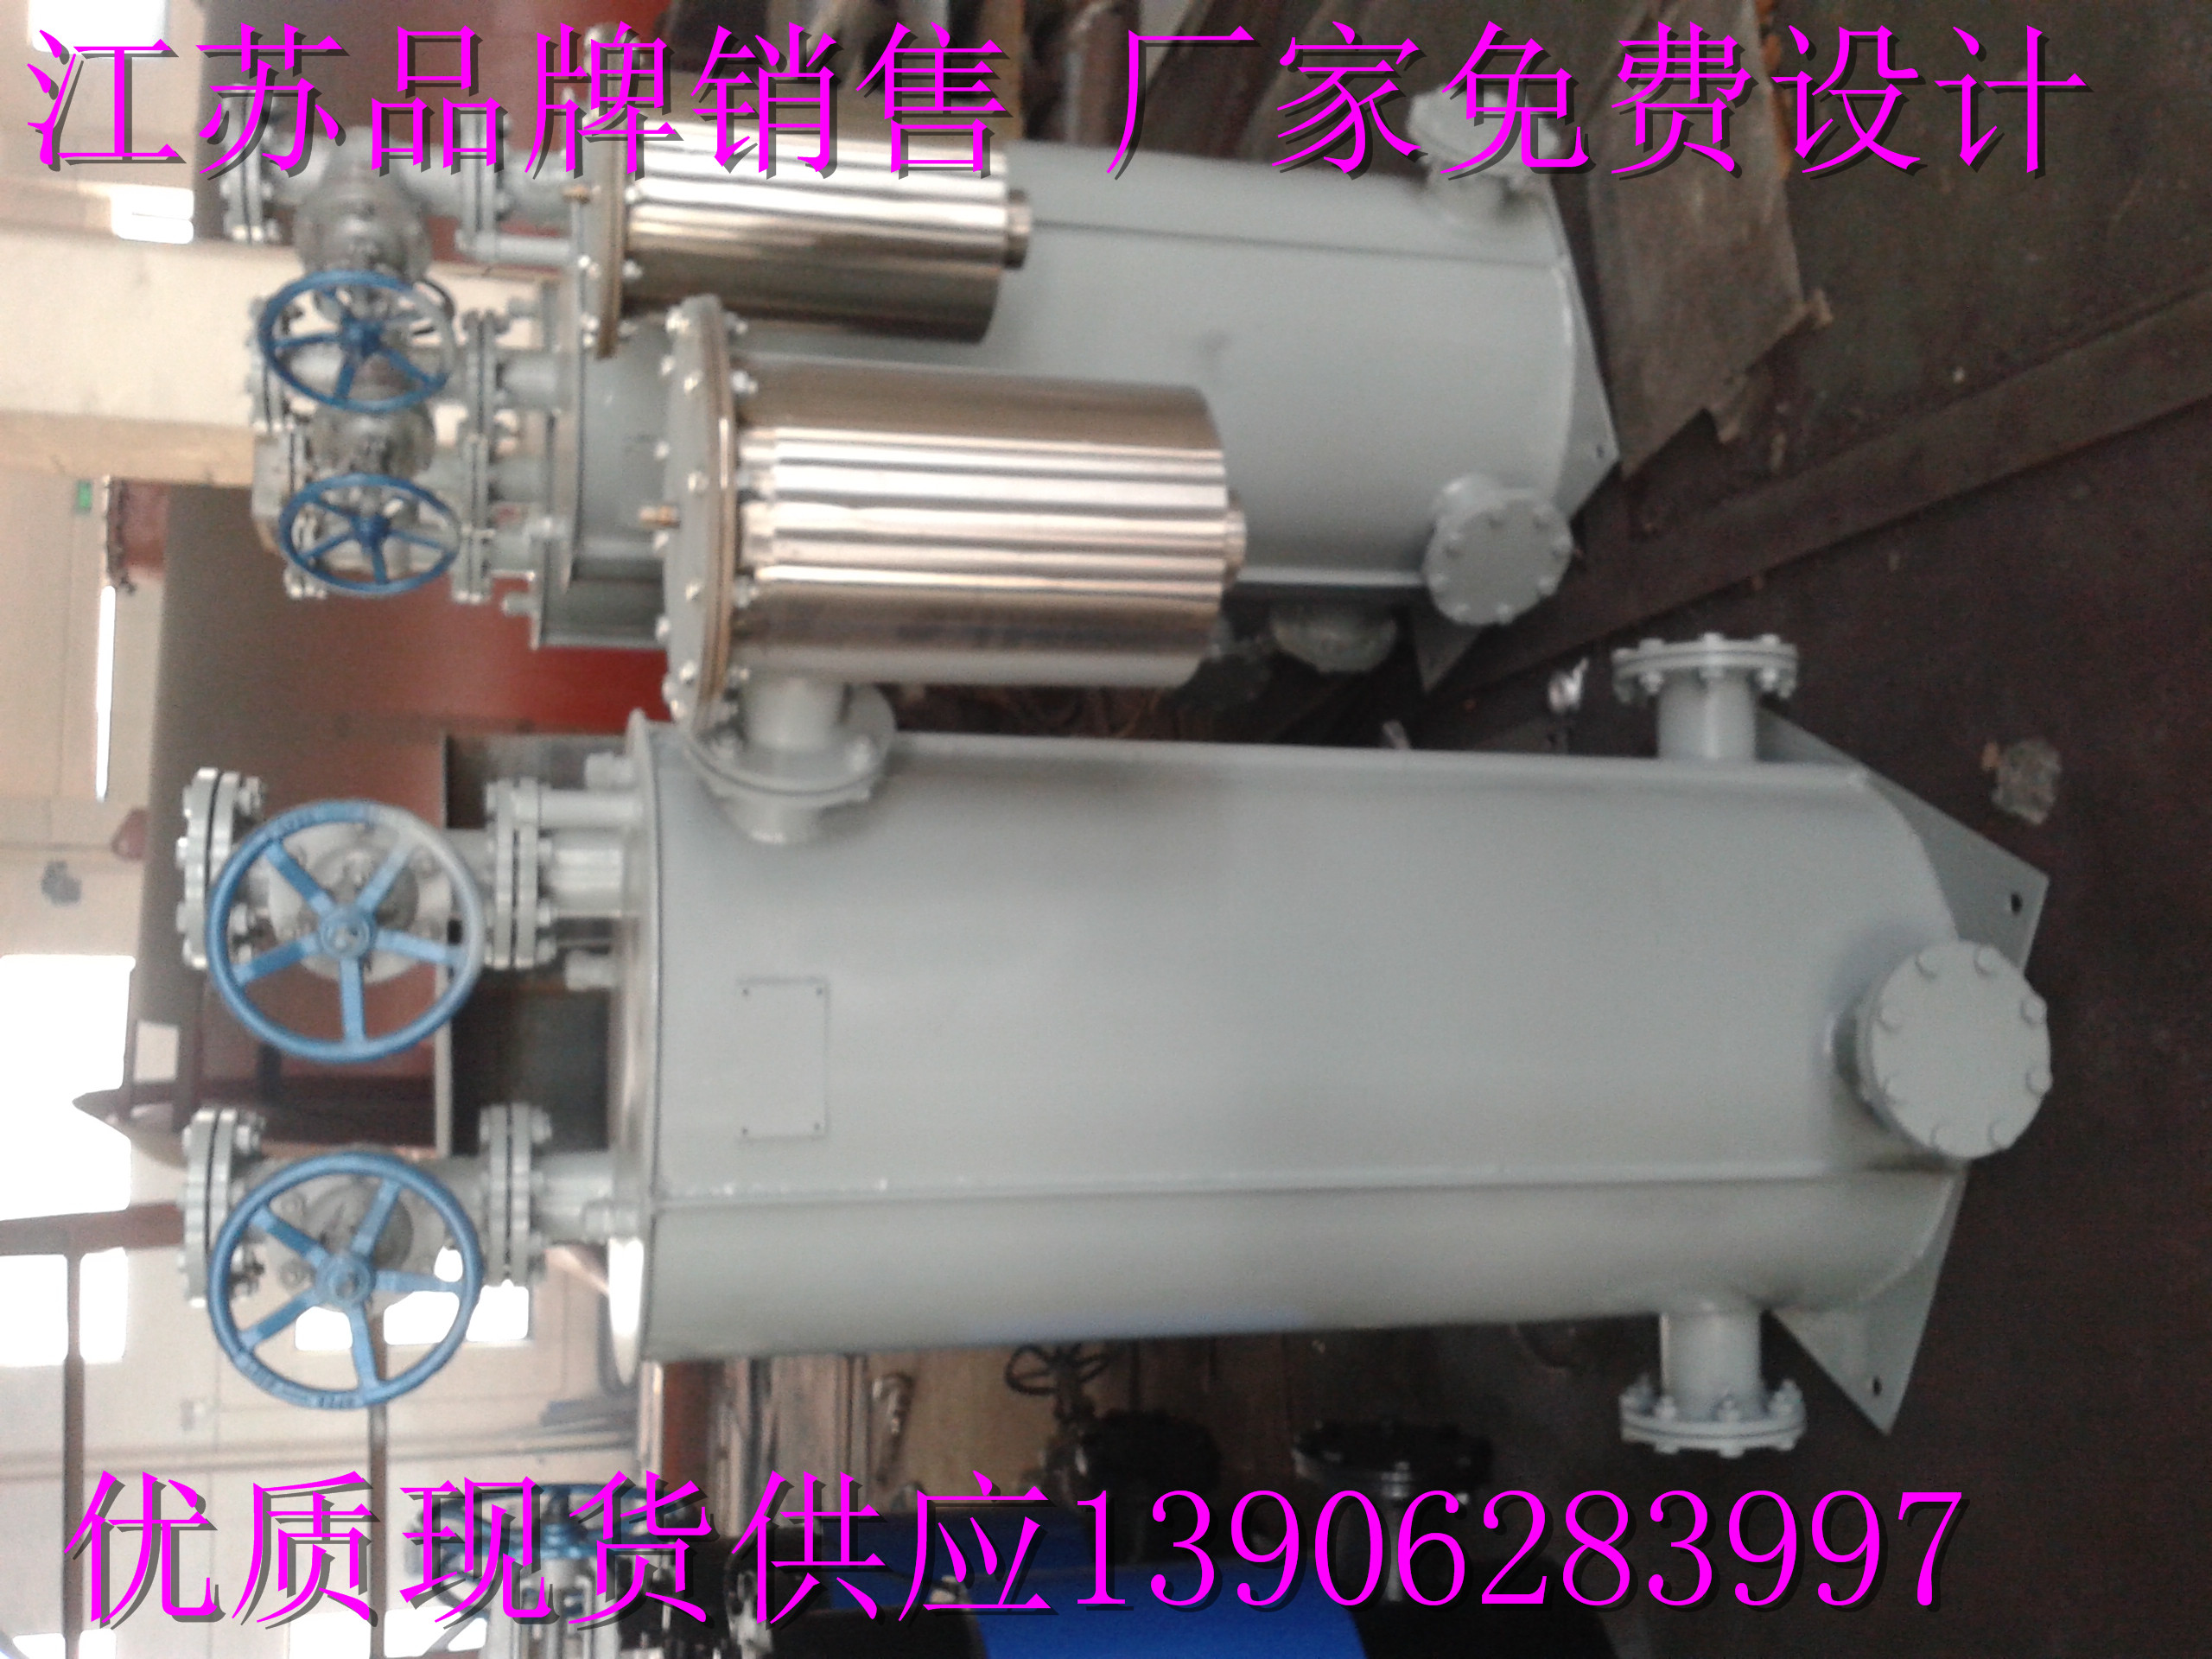 高灵敏度过压保护多功能负压排水器GGD1-（-35）-1.8.F